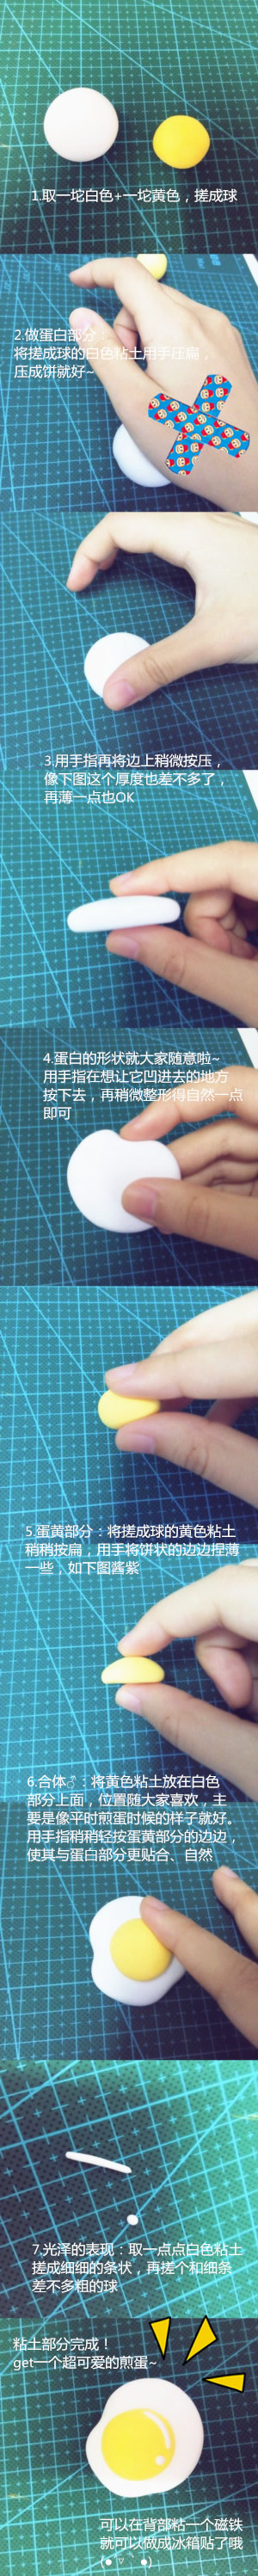 超轻粘土DIY制作煎蛋小饰品冰箱贴的方法